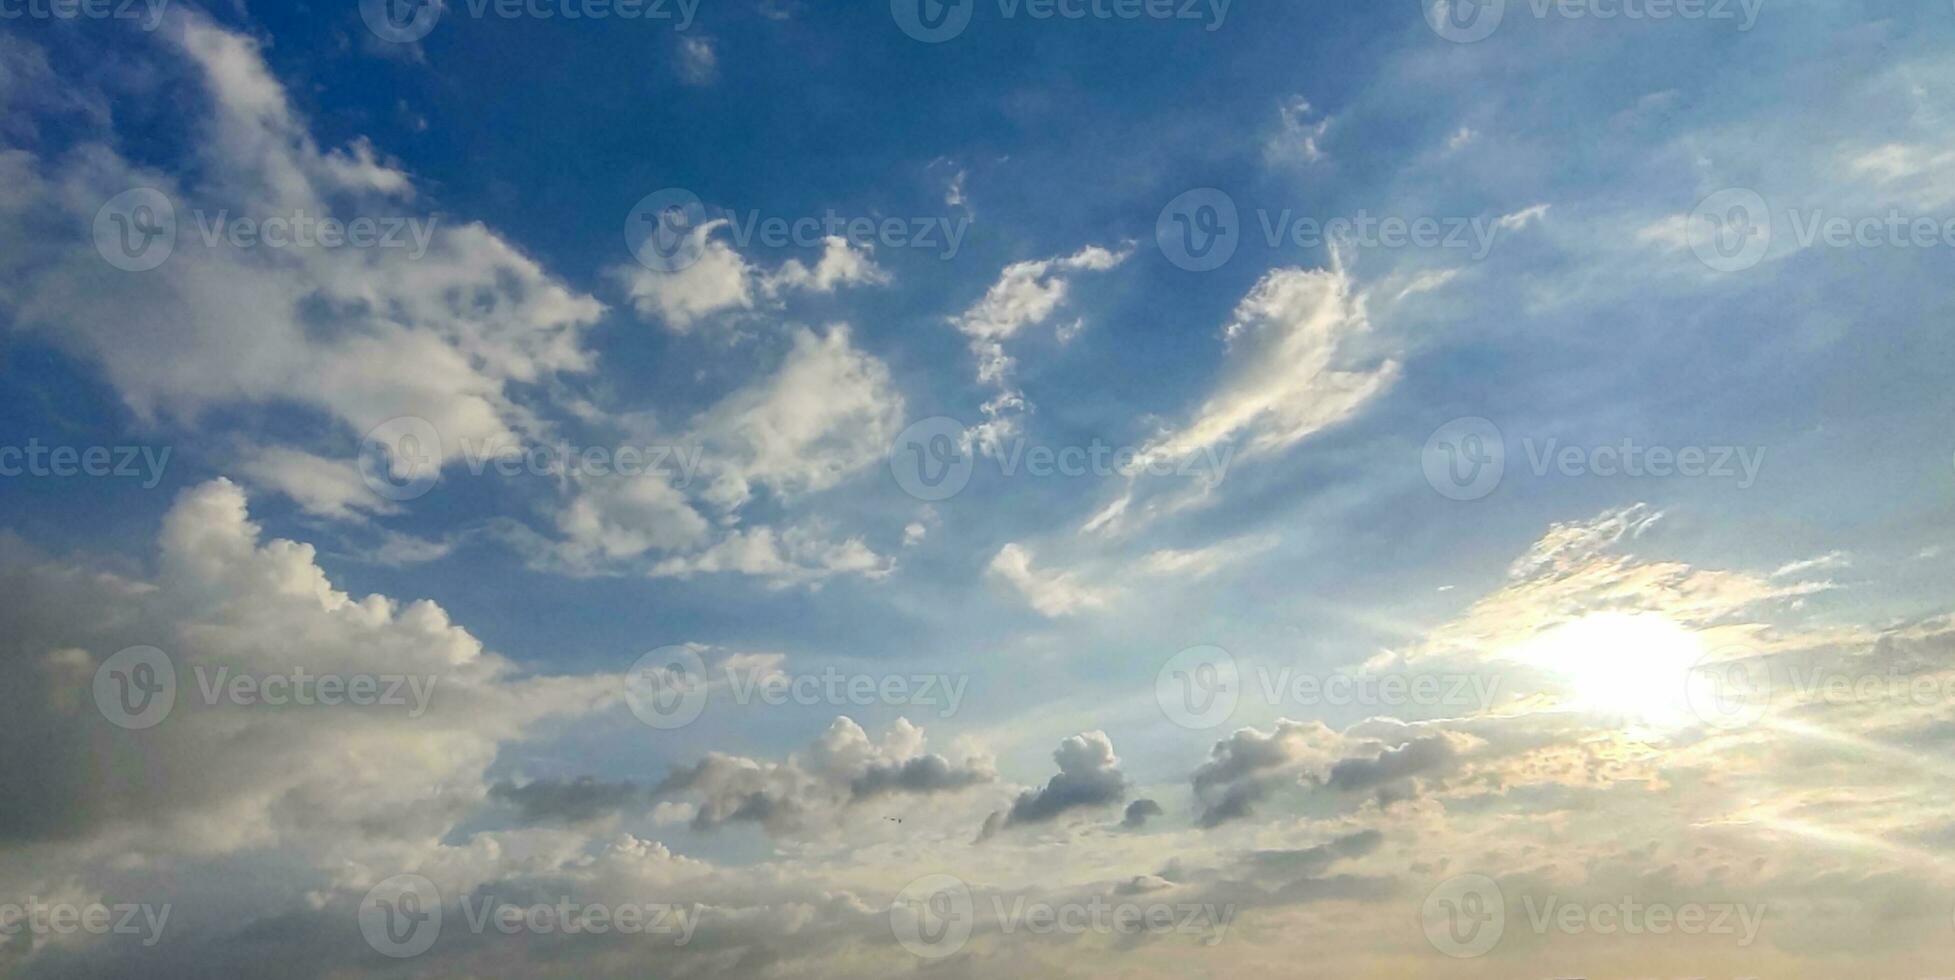 een blauw lucht met wolken en een weinig wolken, blauw lucht, wit wolk tijd vervallen van wolken in de lucht, de zon schijnt door de wolken in deze foto, dramatisch lucht wolken foto